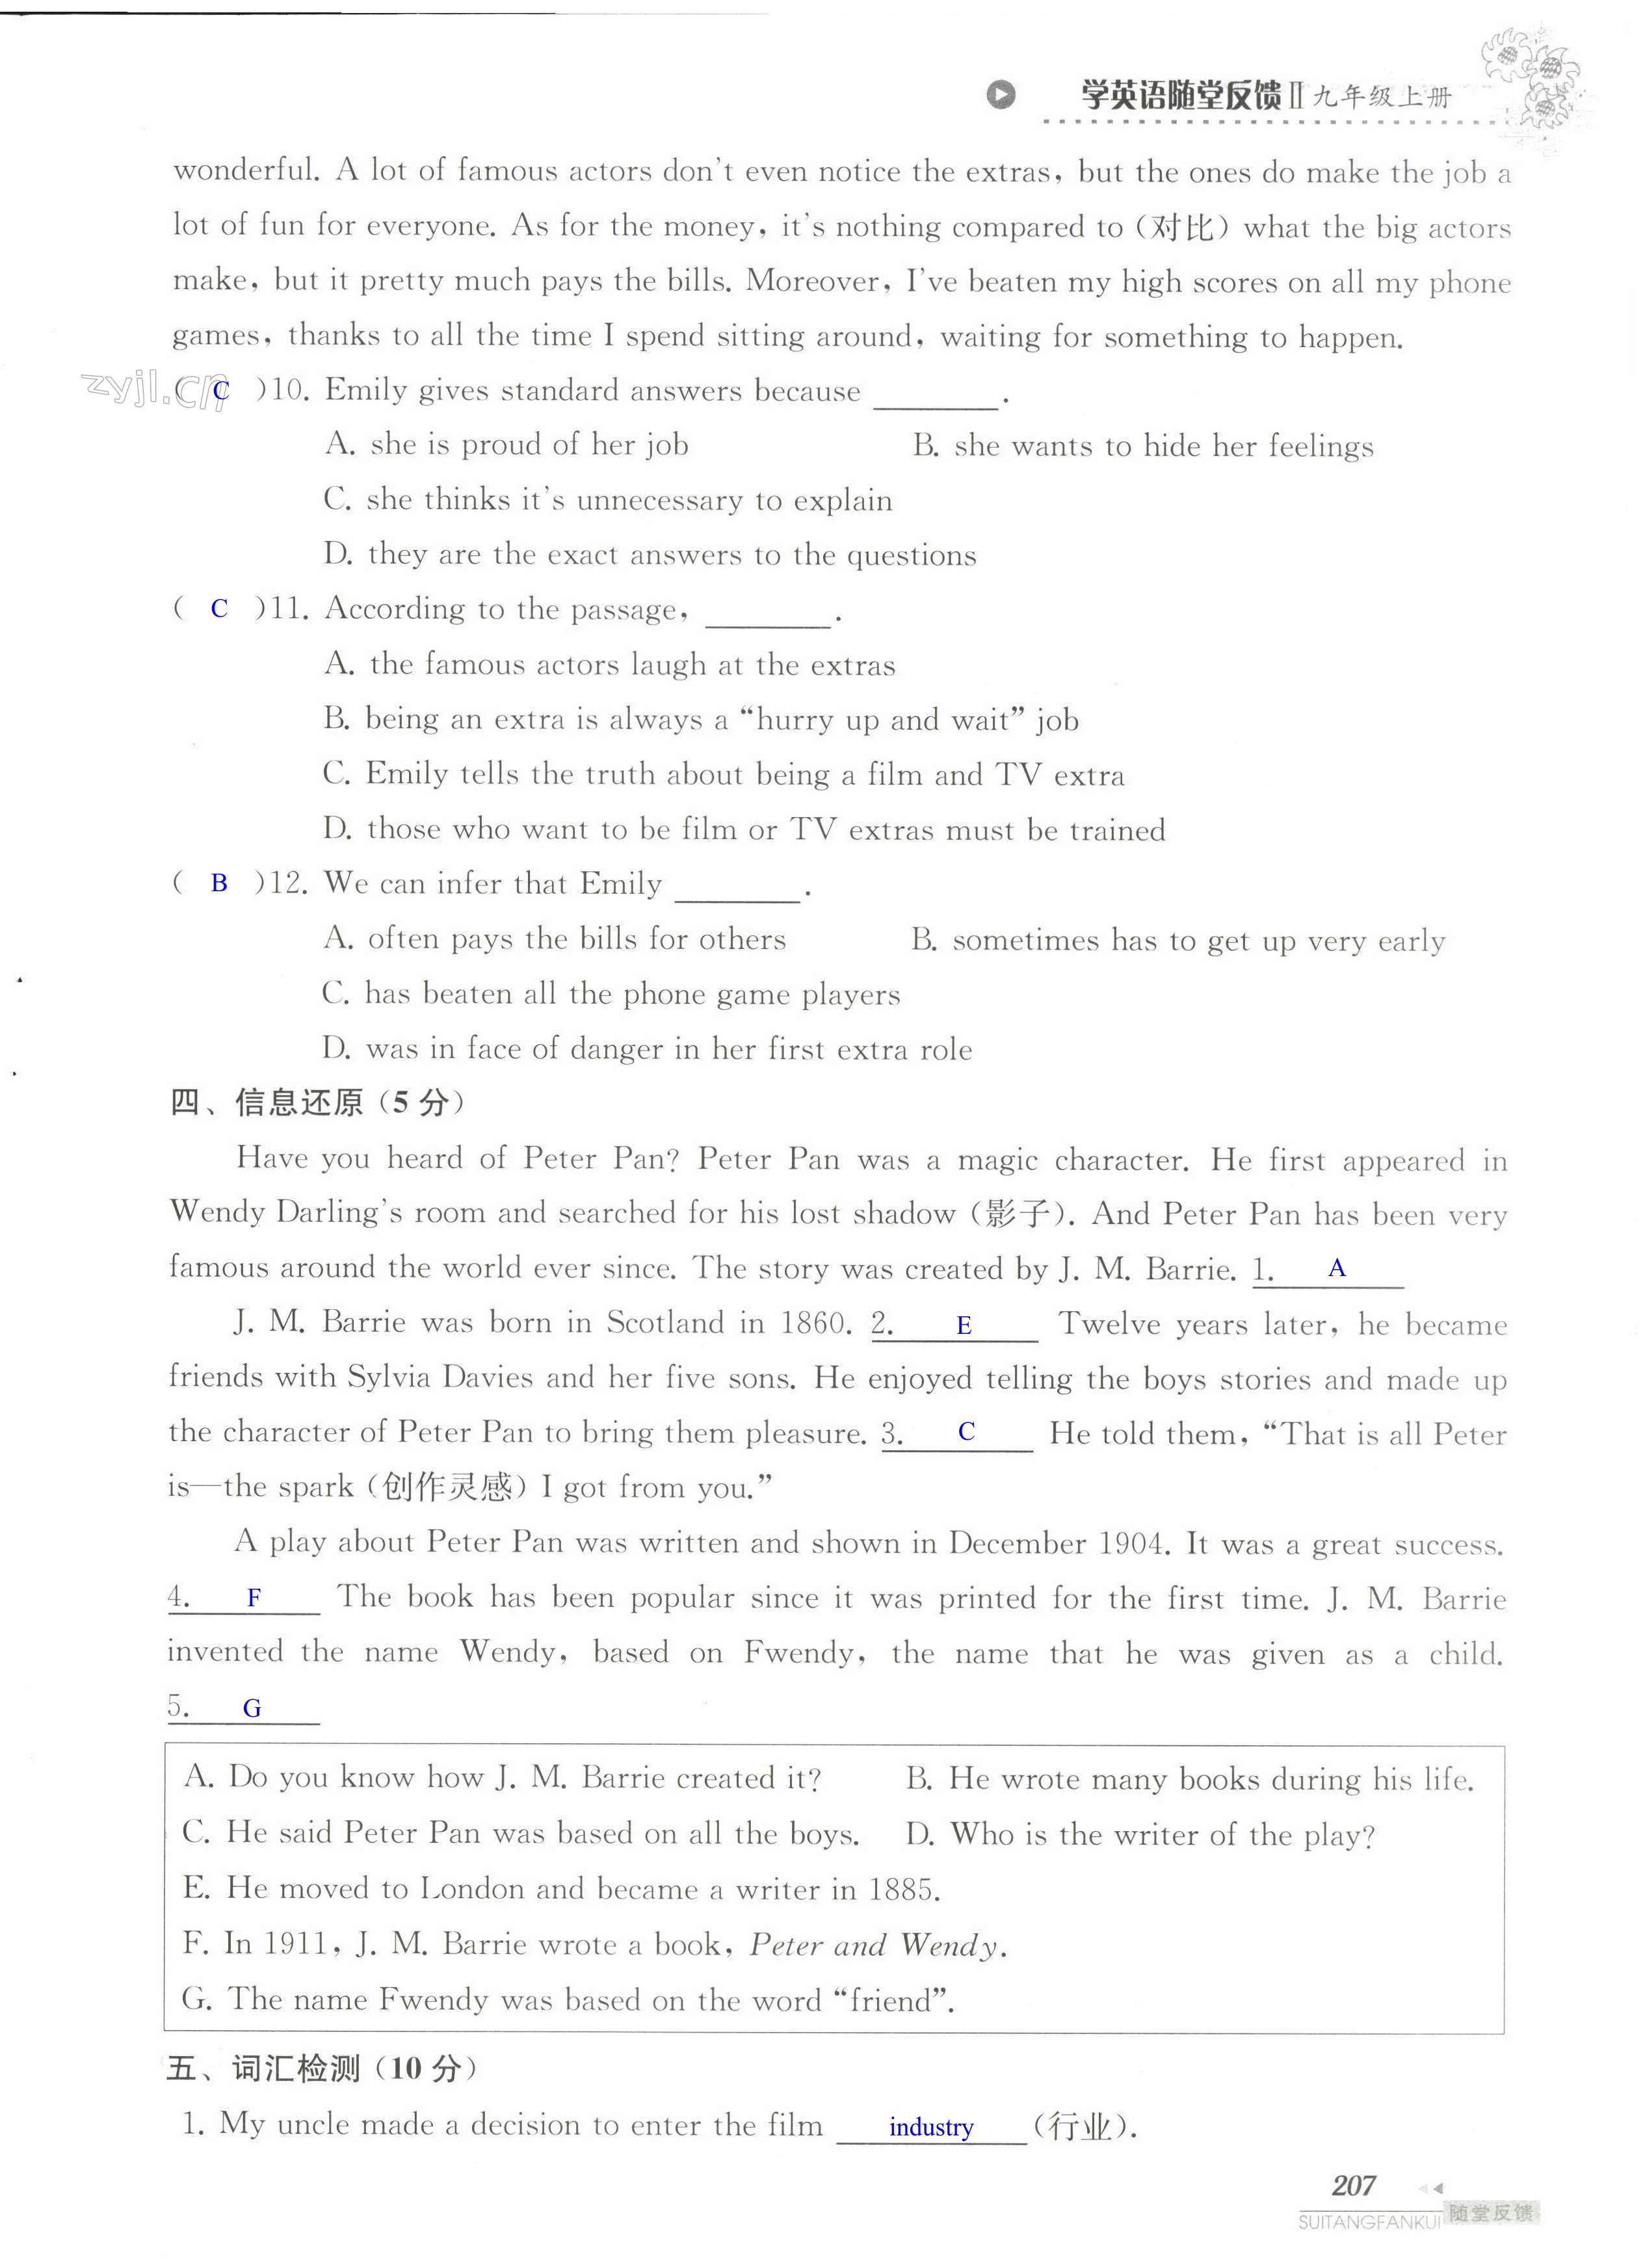 单元综合测试卷 Test for Unit 7 of 9A - 第207页